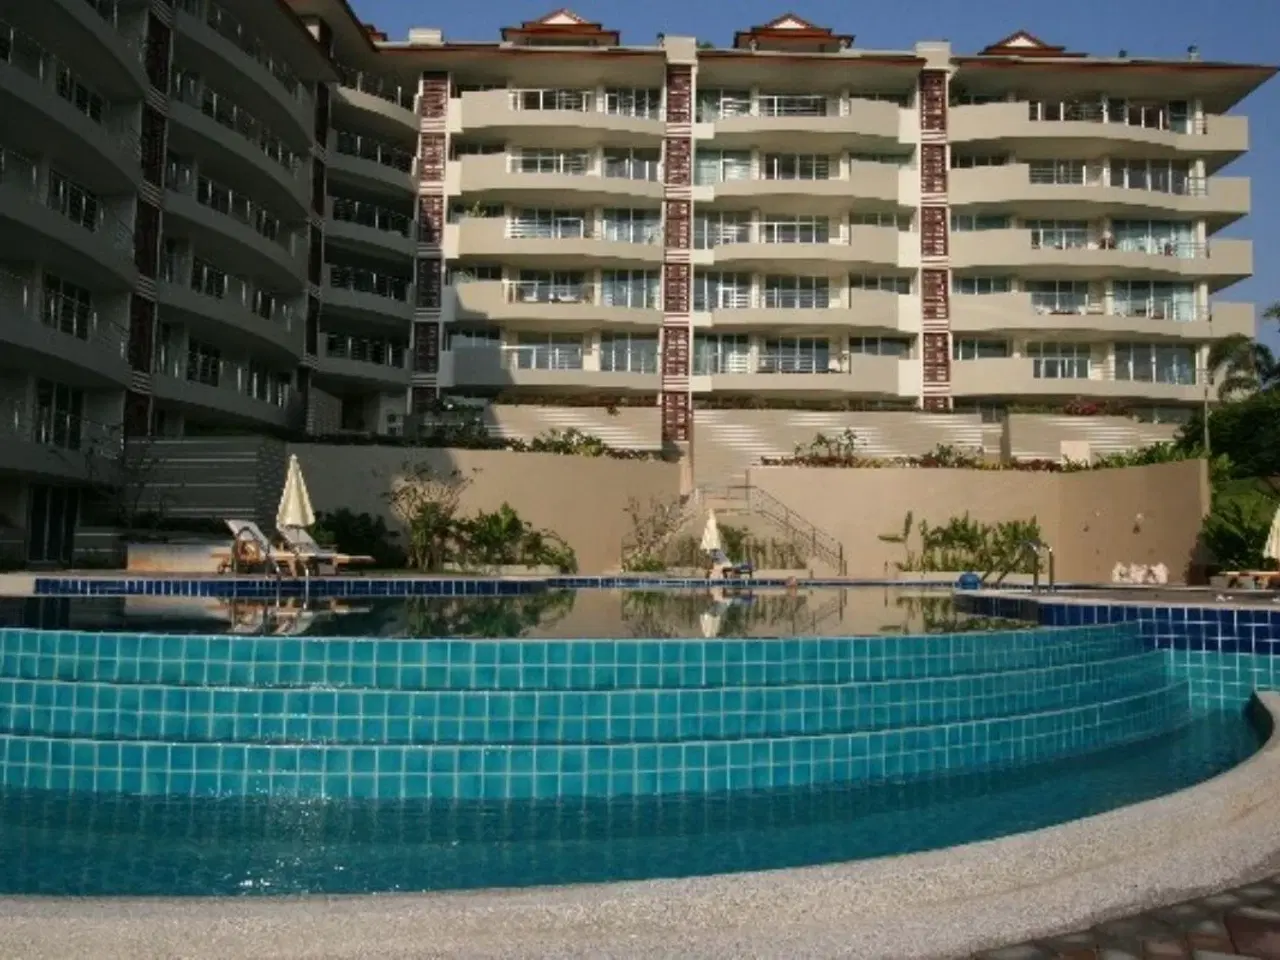 Billede 1 - Lej bolig i Hua Hin Thailand, stor hjørne lejlighed med havudsigt 2 balkoner, 3 soveværelser+ 2 bad